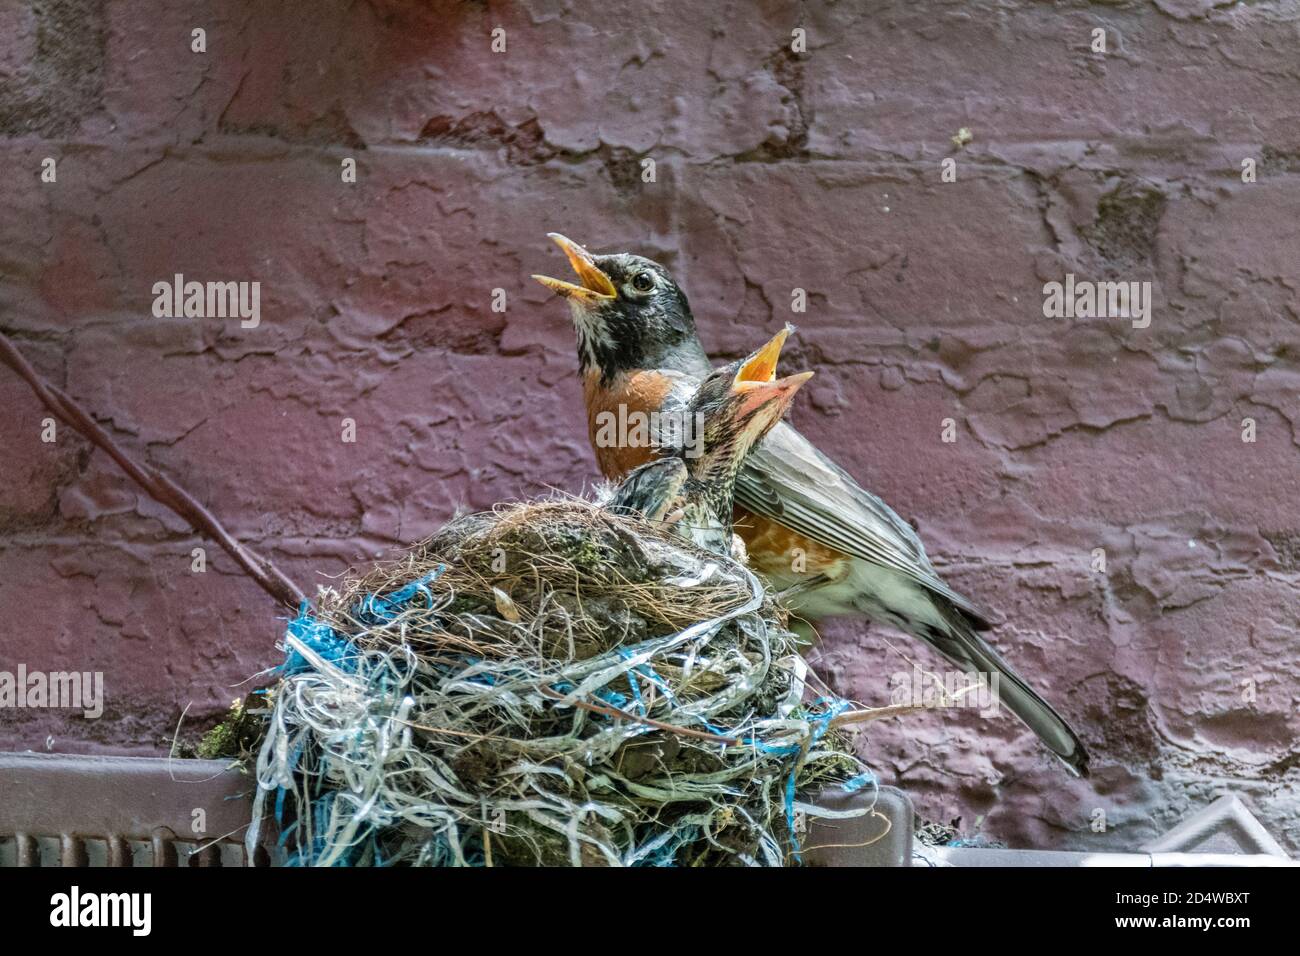 Adult American Robin, Turdus migratorius, con cazzo nel nido, sembra cantare un duetto con le querce aperte, New York City, USA Foto Stock